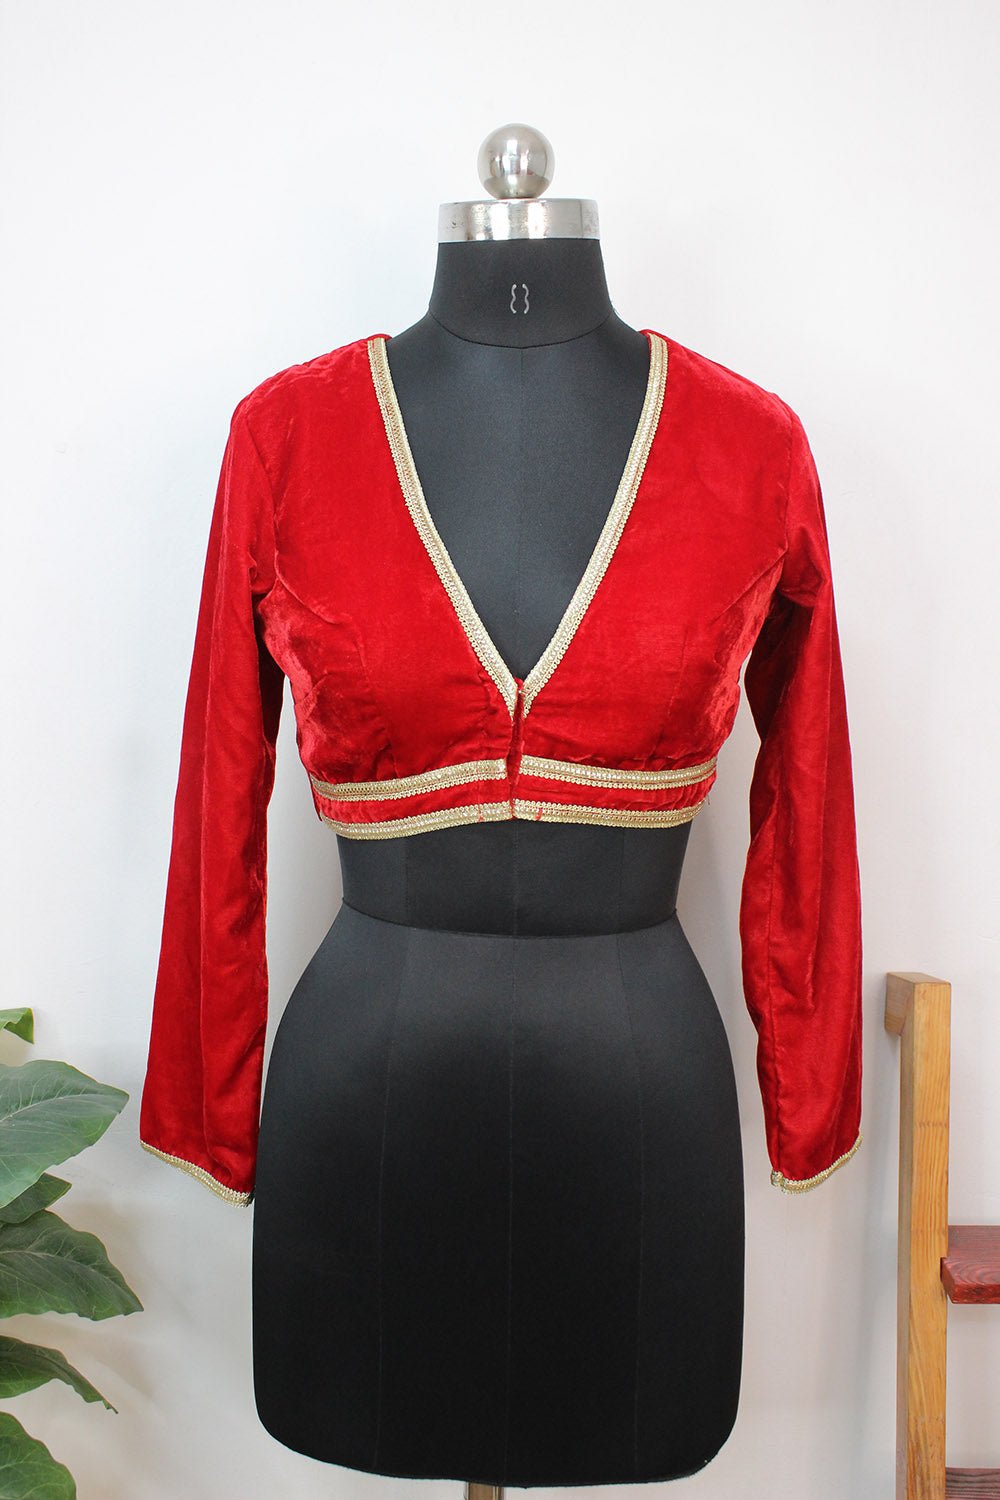 Stylish Red Velvet V-Neck Blouse: Full Sleeves & Trendy Design